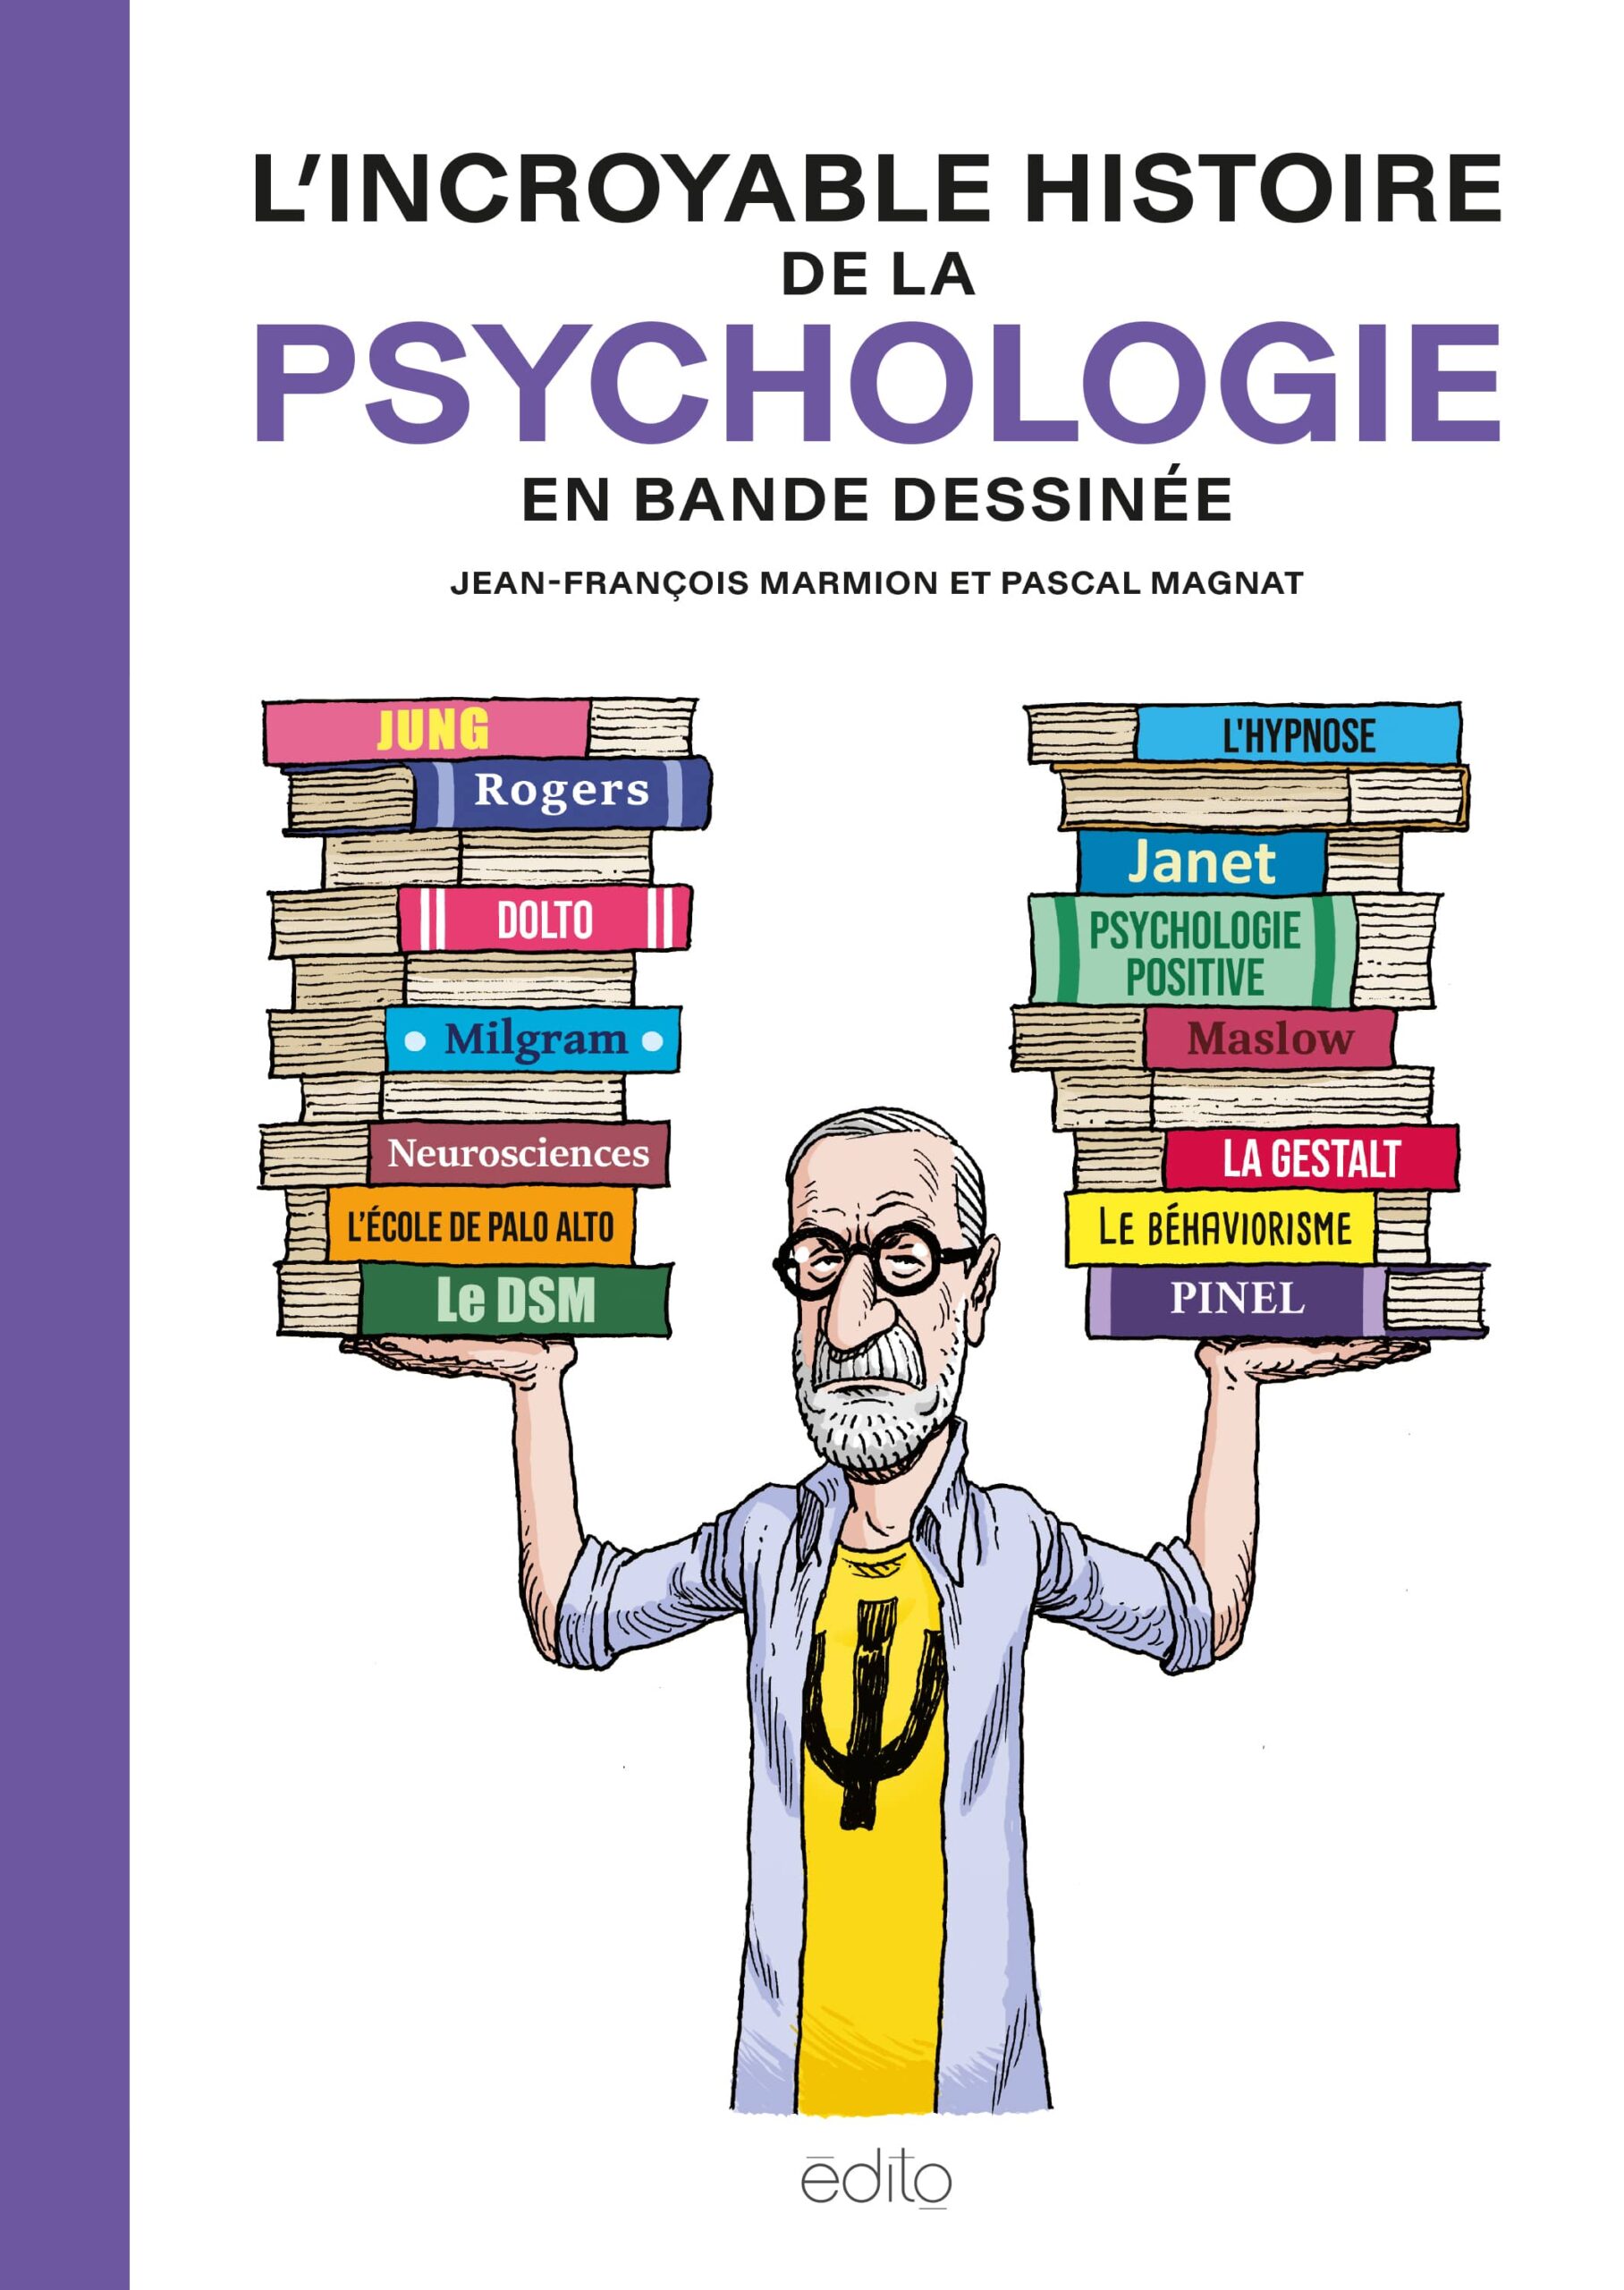 Image L'incroyable histoire de la psychologie en bande dessinée